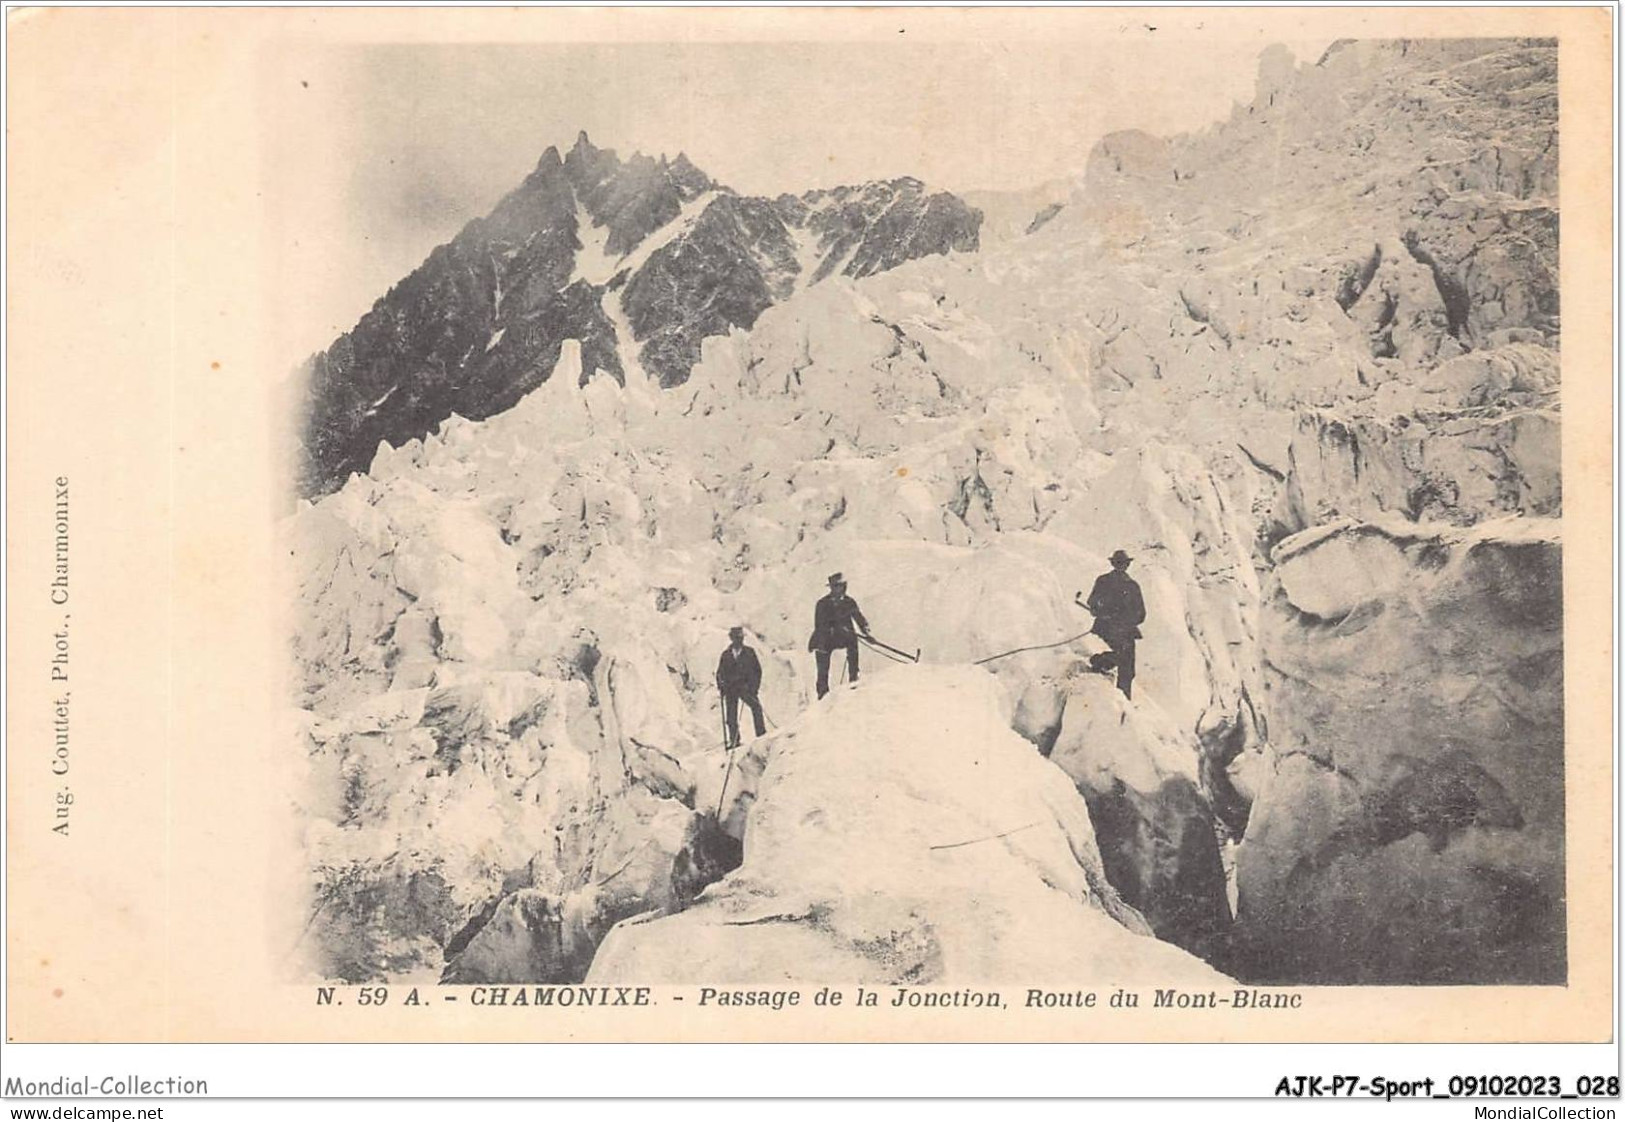 AJKP7-0665 - SPORT - CHAMONIX - PASSAGE DE LA JONCTION - ROUTE DU MONT-BLANC  - Mountaineering, Alpinism